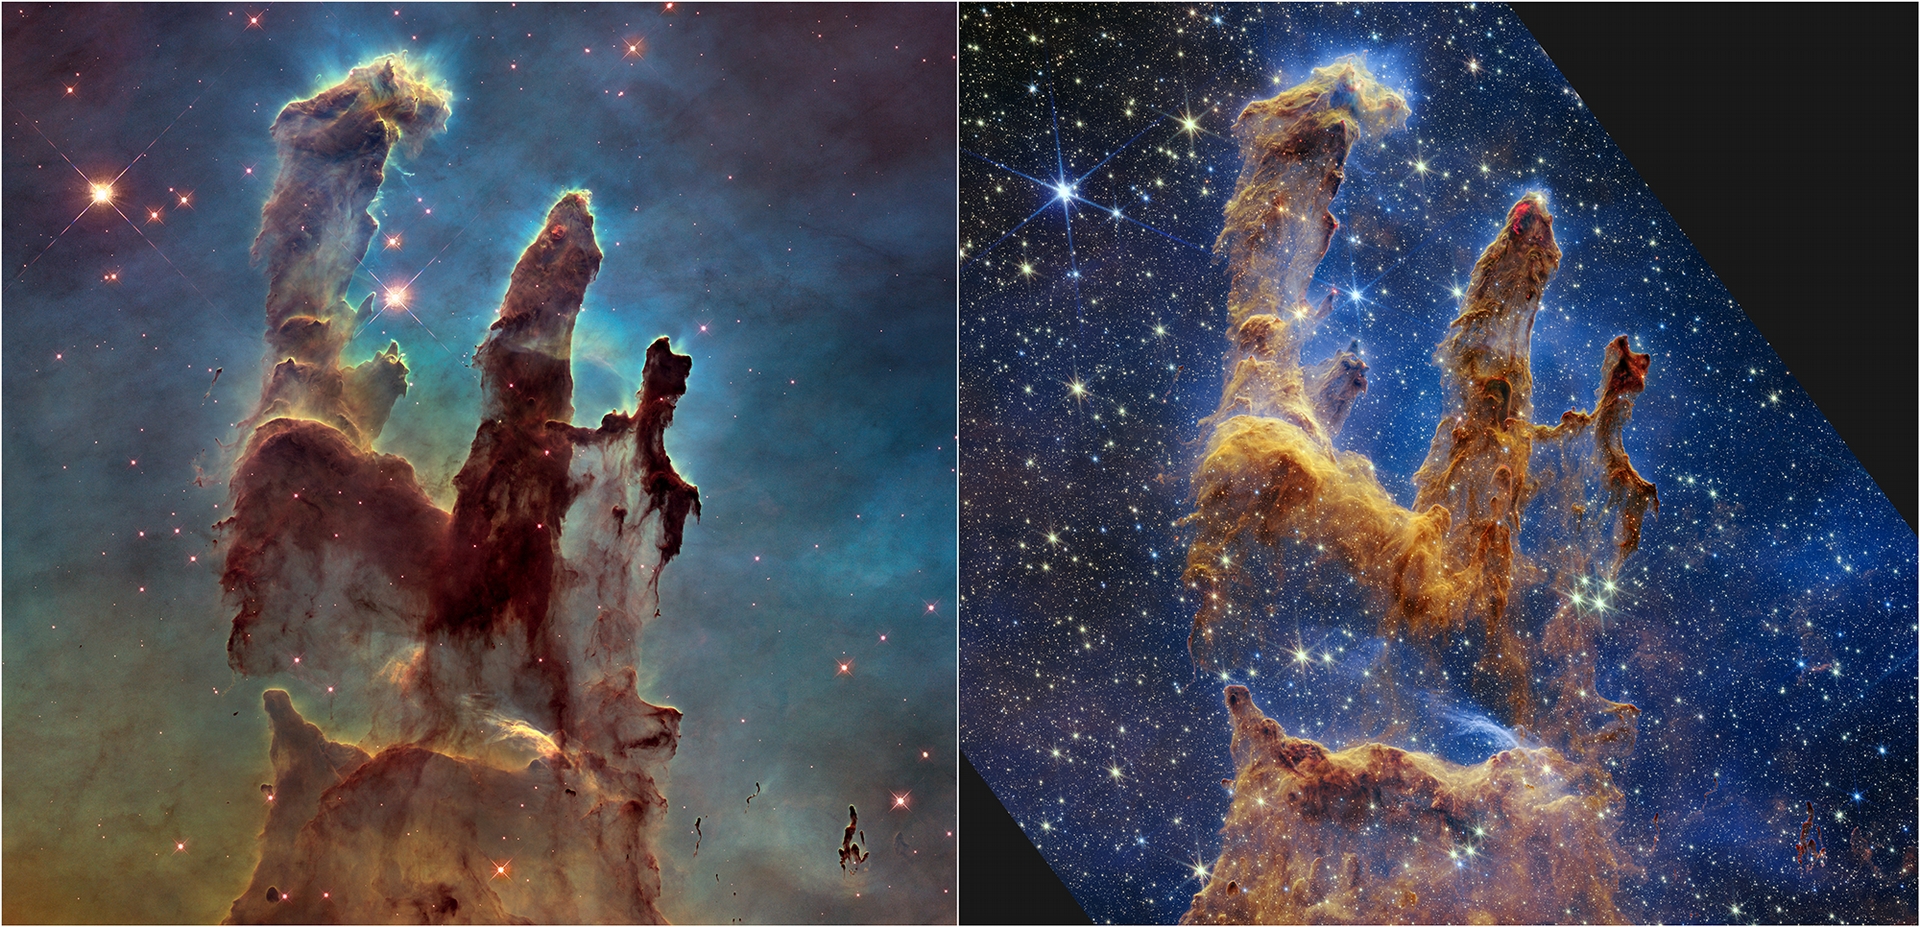 哈伯太空望遠和韋伯太空望遠鏡拍攝的「創生之柱」比較圖，可以明顯發現韋伯望遠鏡拍攝到更多埋藏在星雲中的新生恆星。